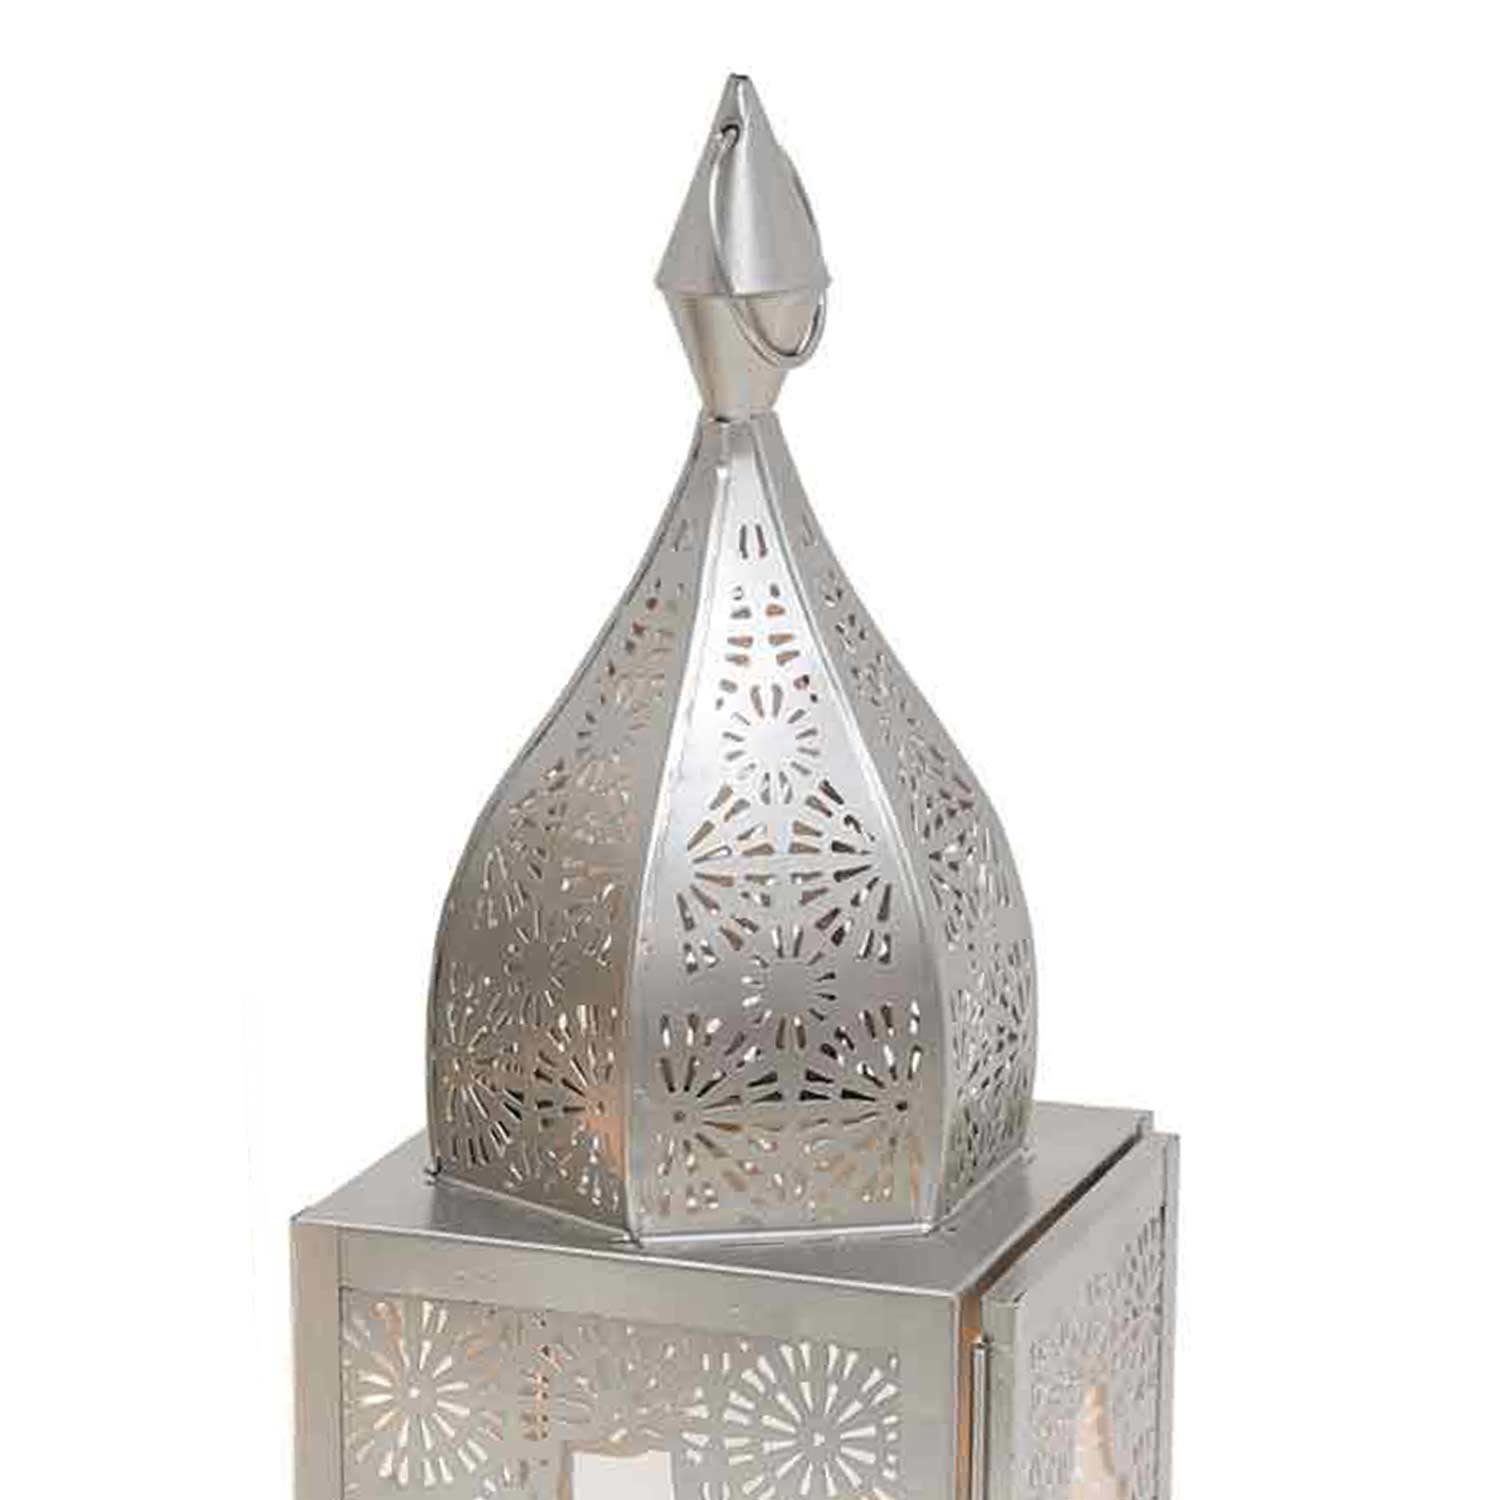 Casa Moro Bodenwindlicht Glas Nacht, aus Modena Marokkanische Minarette 1001 Windlicht IRL670, Orientalisches Weihnachtsbeleuchtung, Kunsthandwerk, marokkanische Glaslaterne M & aus Kerzenhalter Metall schöne Laterne Minarett wie Form, Höhe Silber 45cm